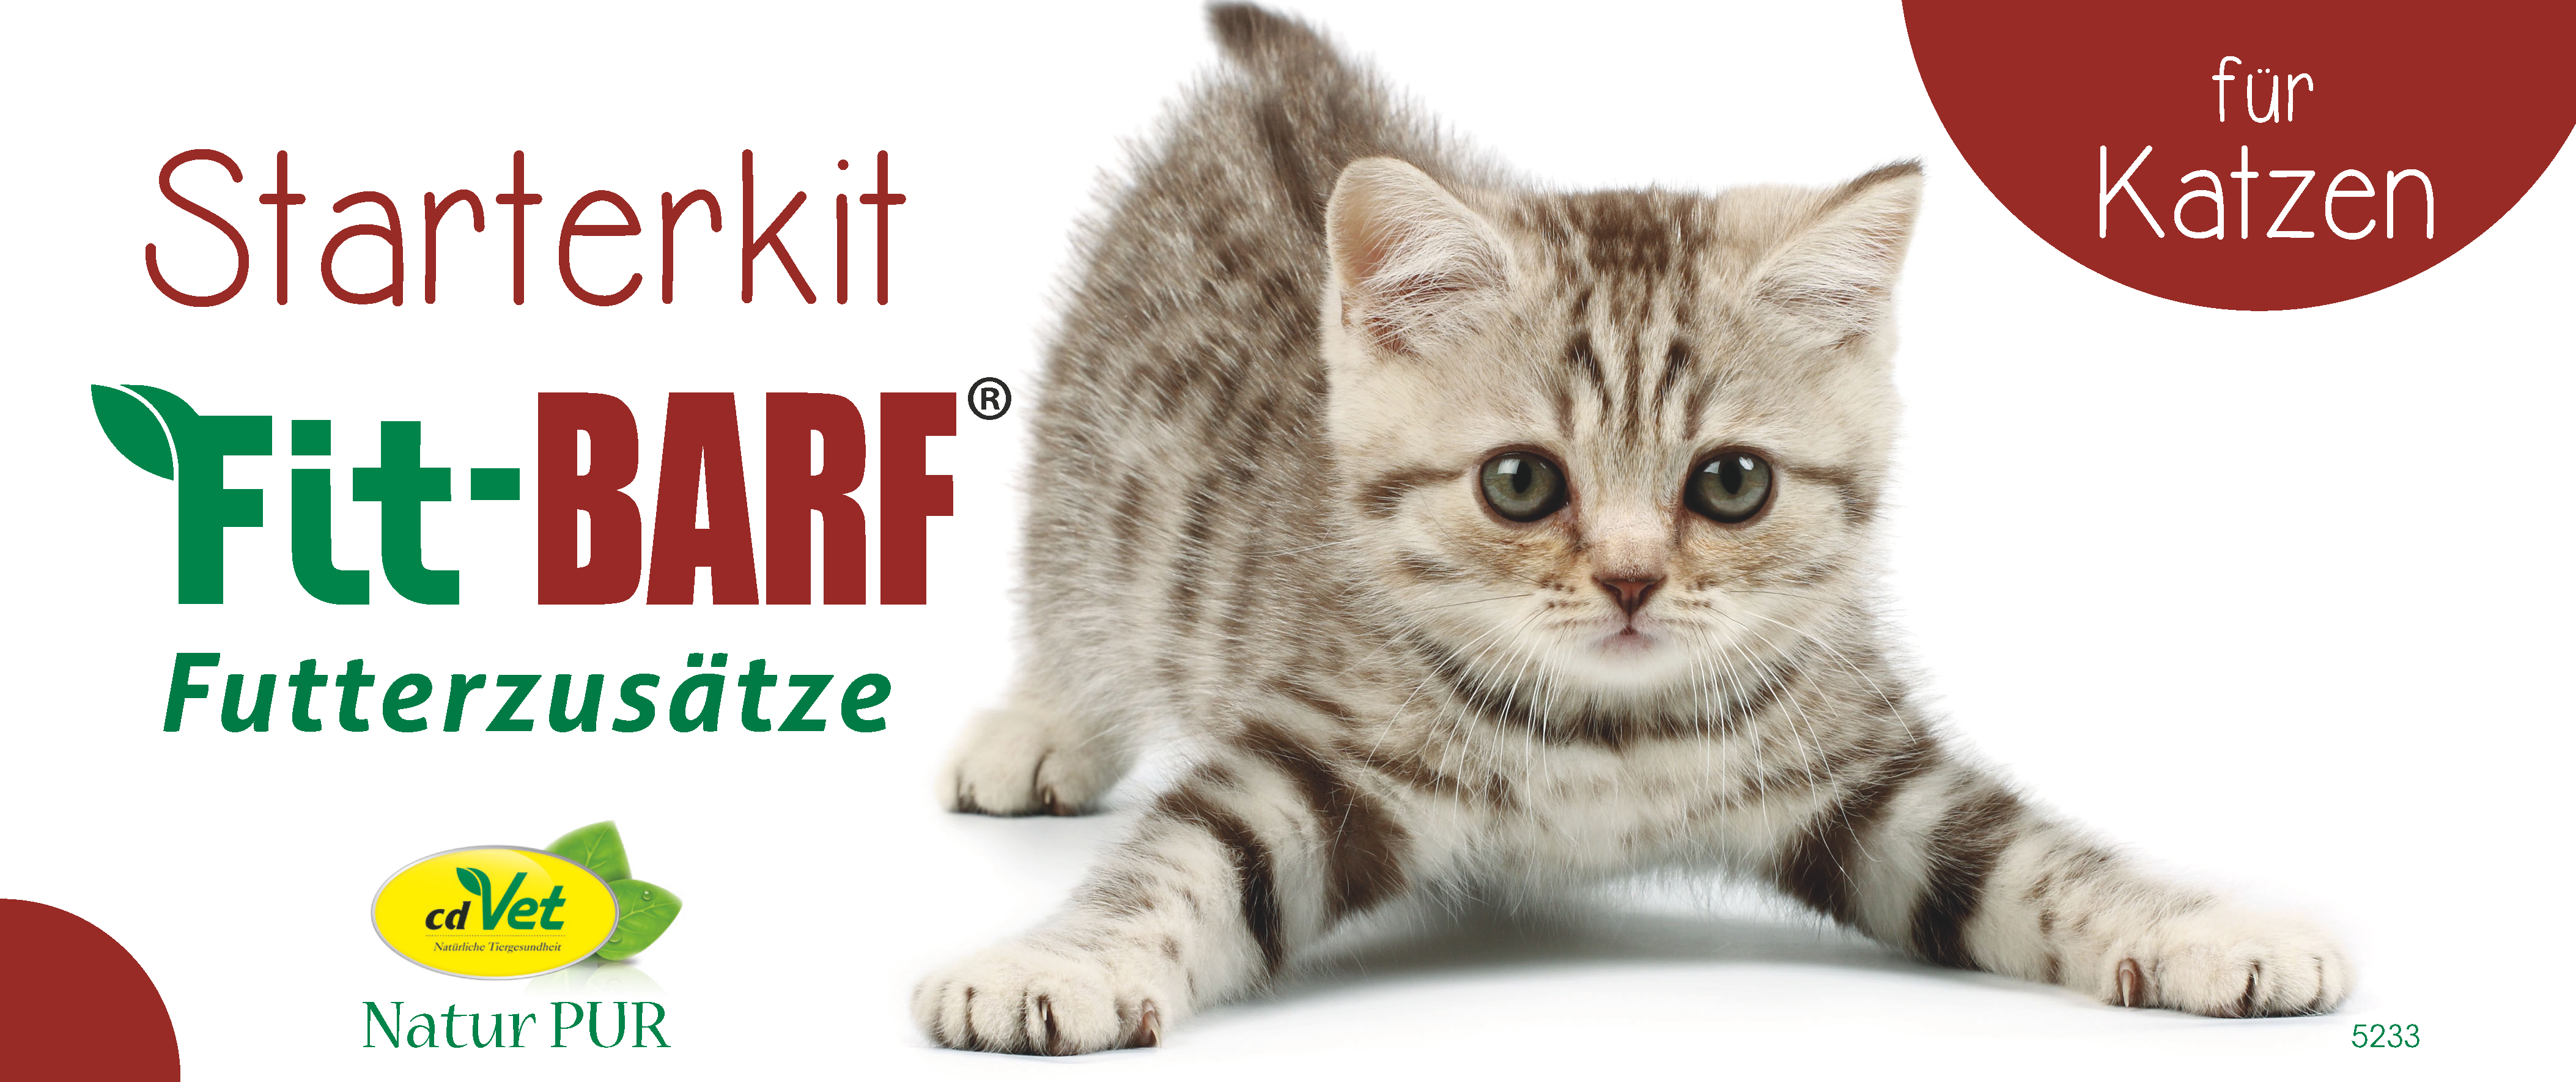 Fit-BARF Starterkit für Katzen